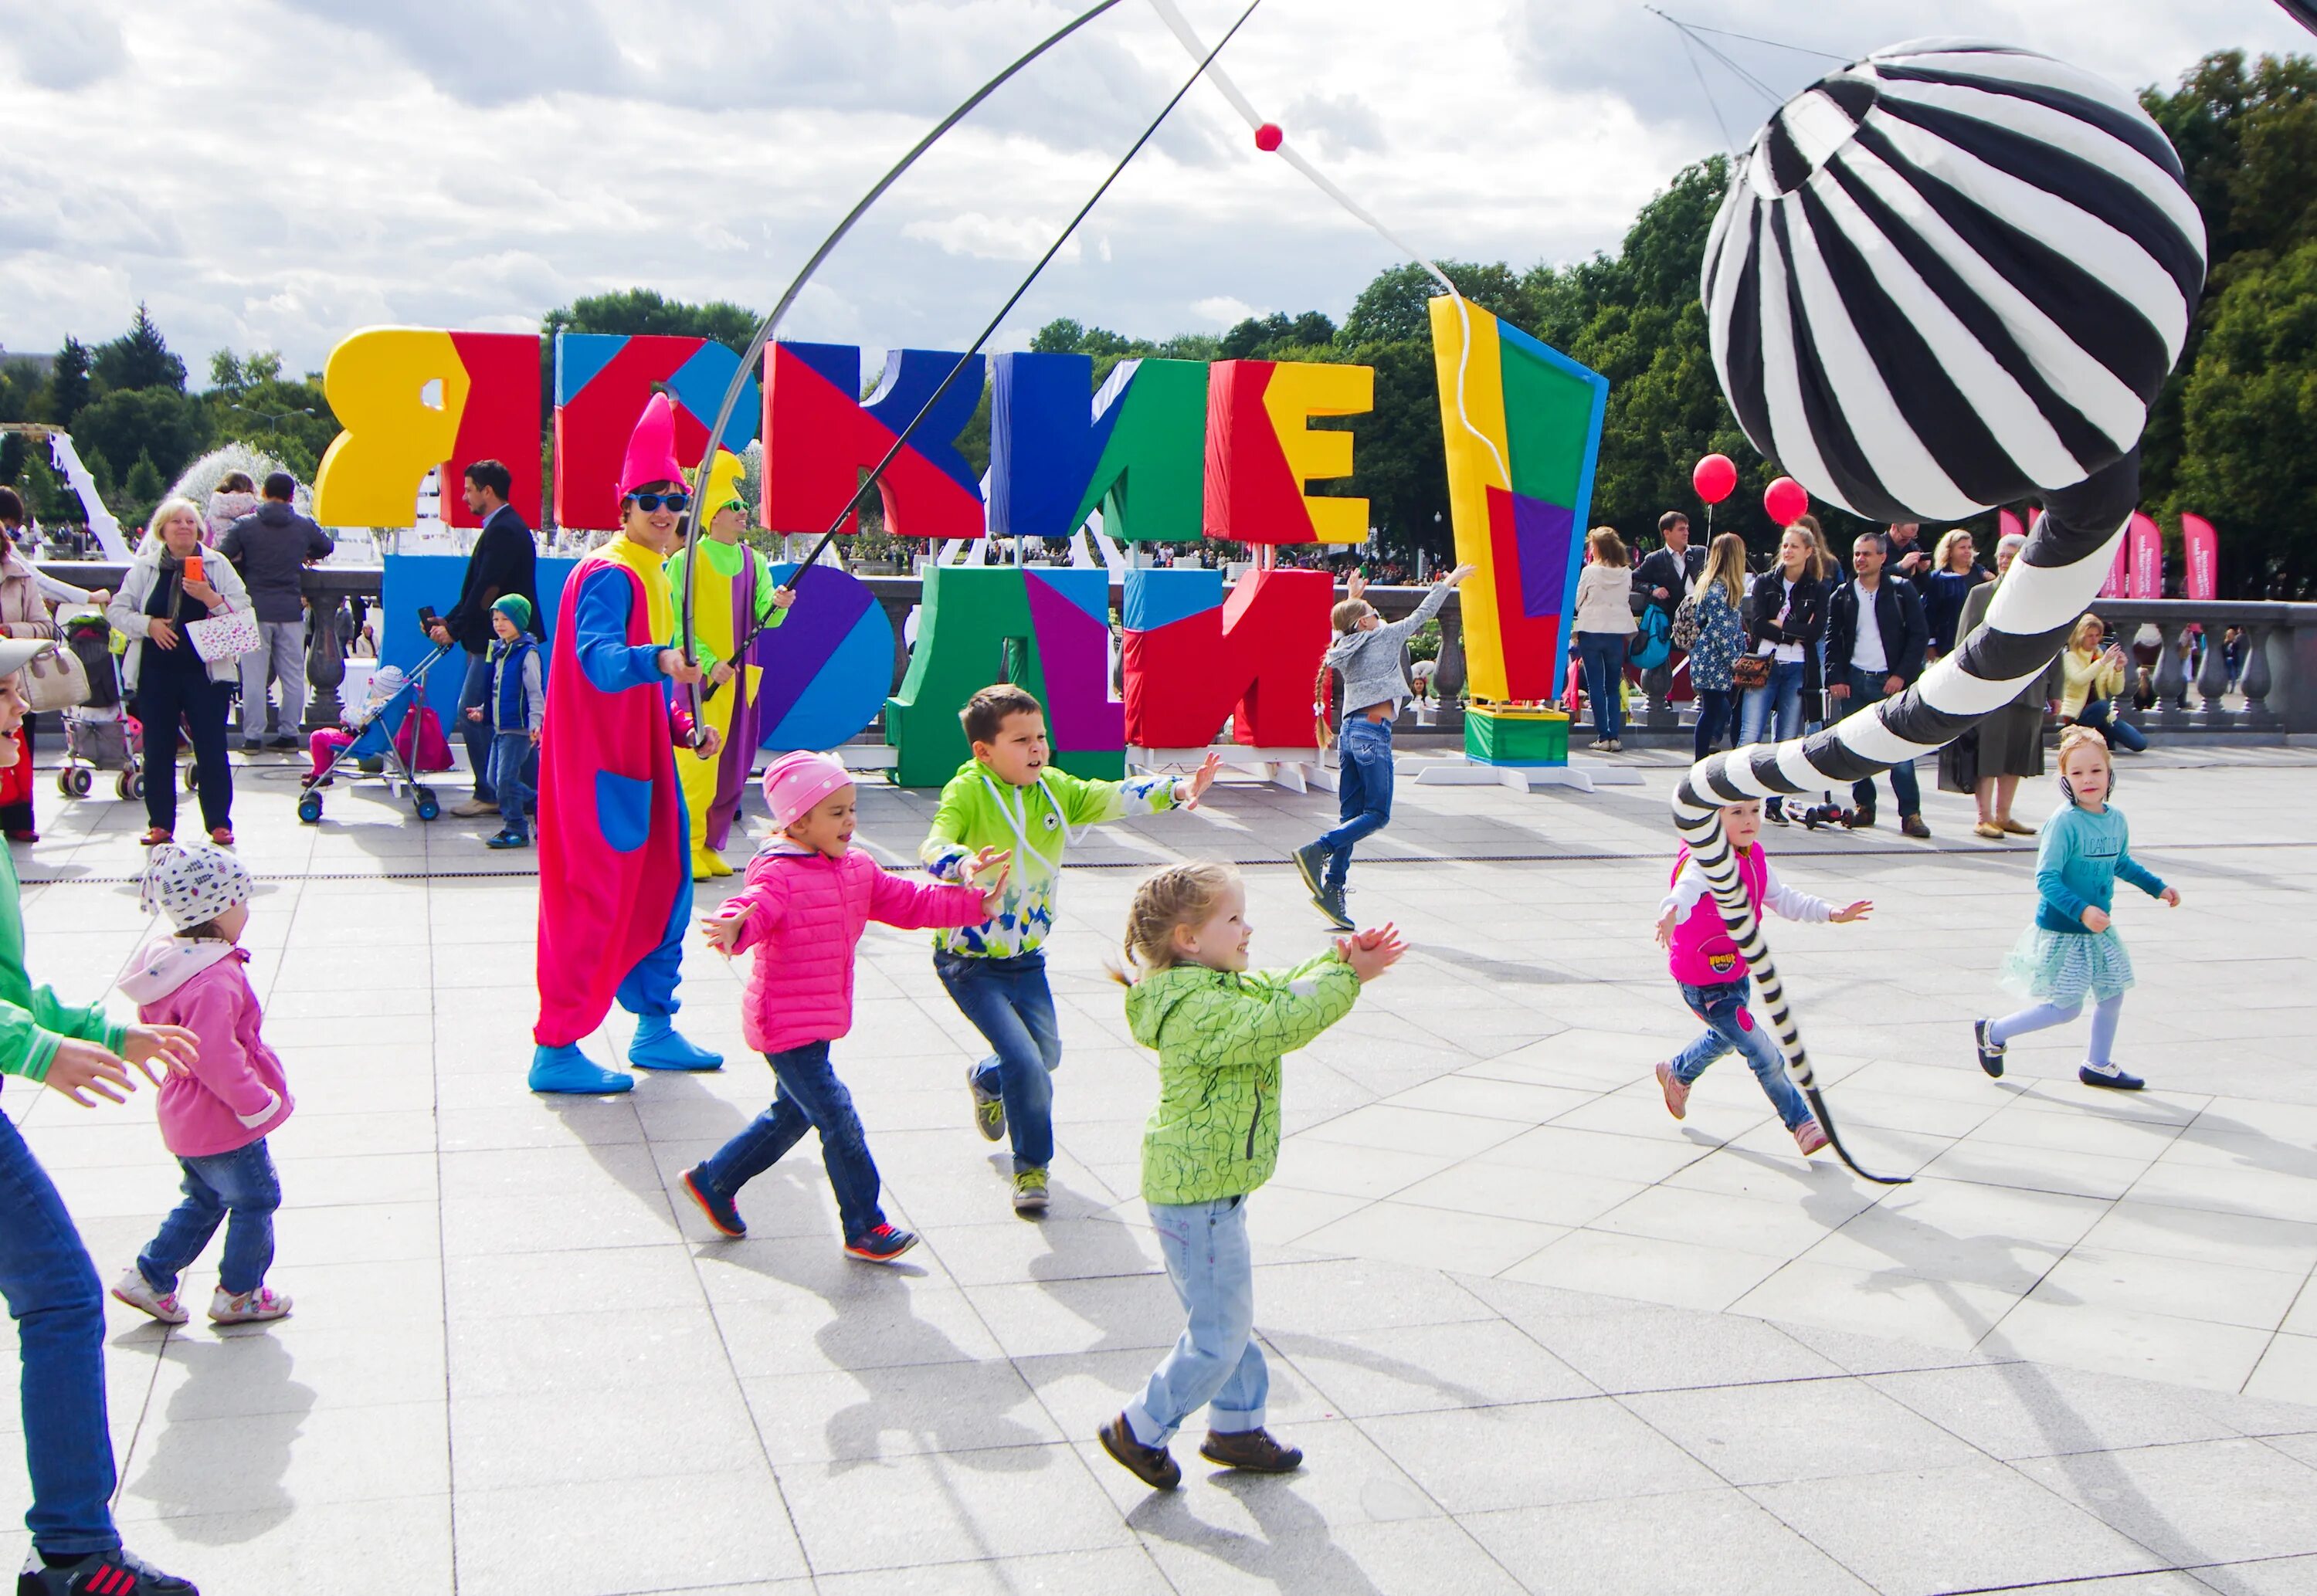 Июнь развлечения. Творческий фестиваль «яркие люди» в «Музеоне». Праздник в парке. Развлекательные площадки для детей. Интерактивные площадки для детей на празднике.